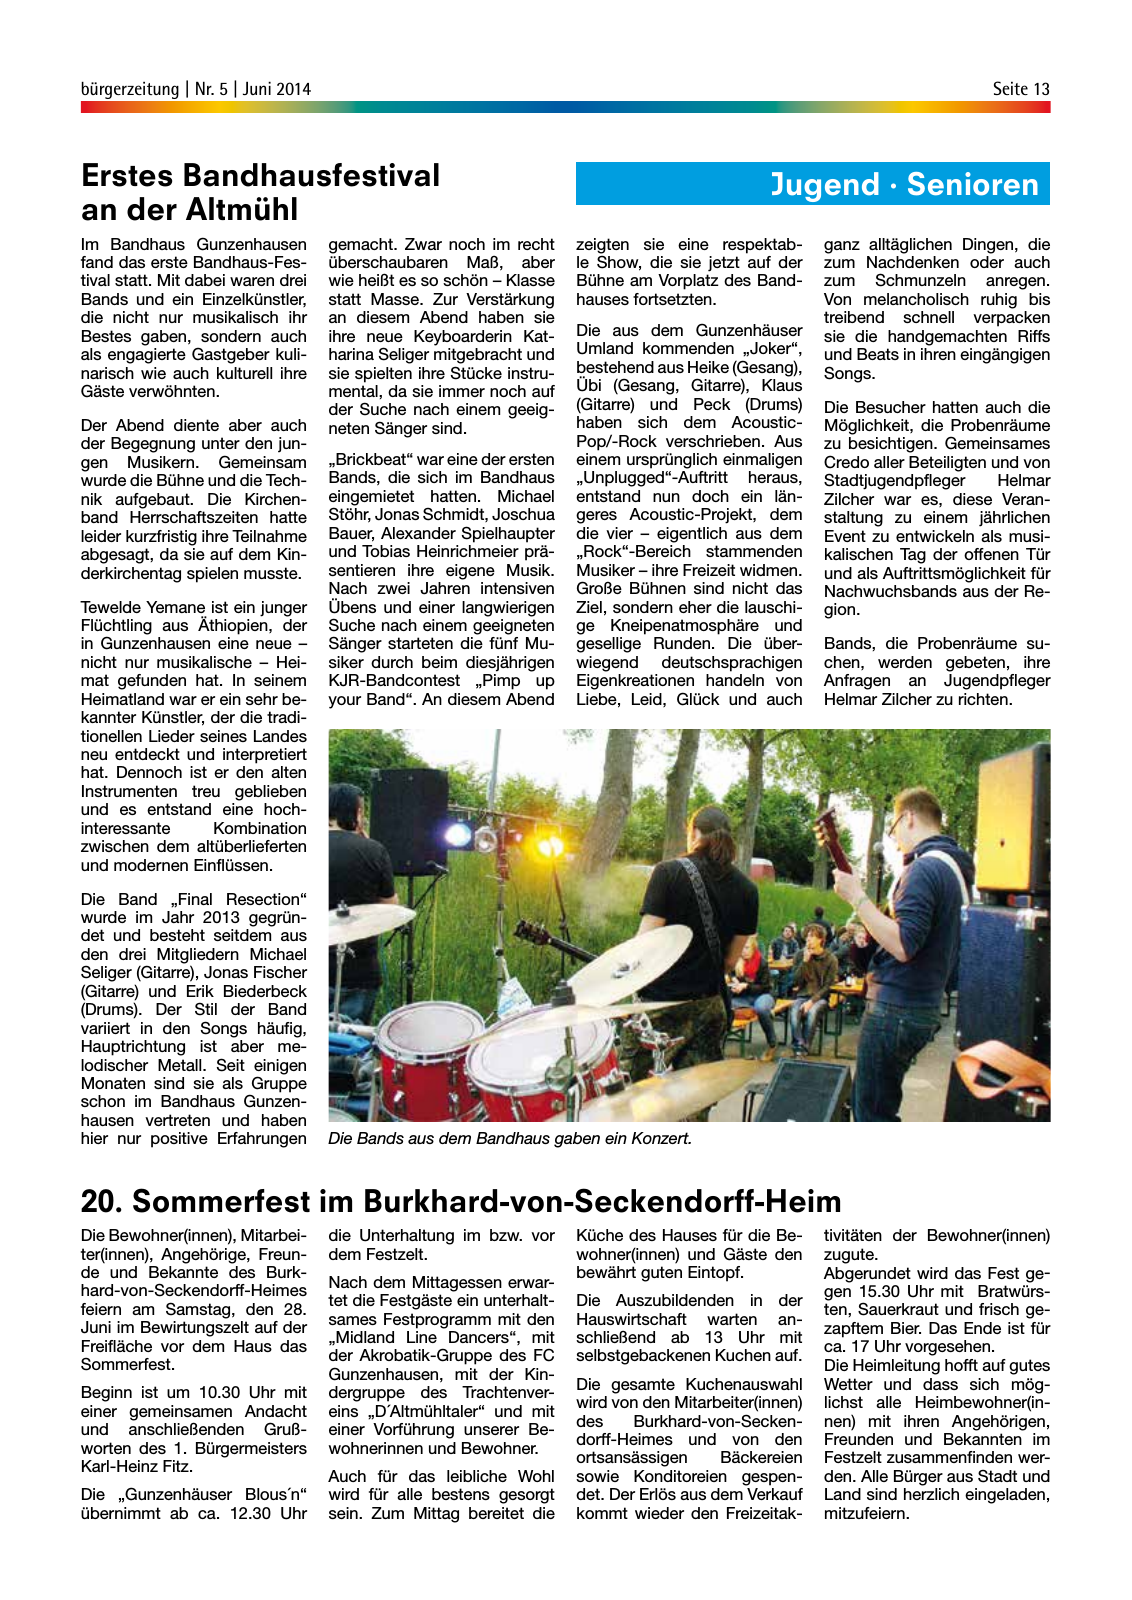 Vorschau buergerzeitung_Nr_5_Juni_2014 Seite 13